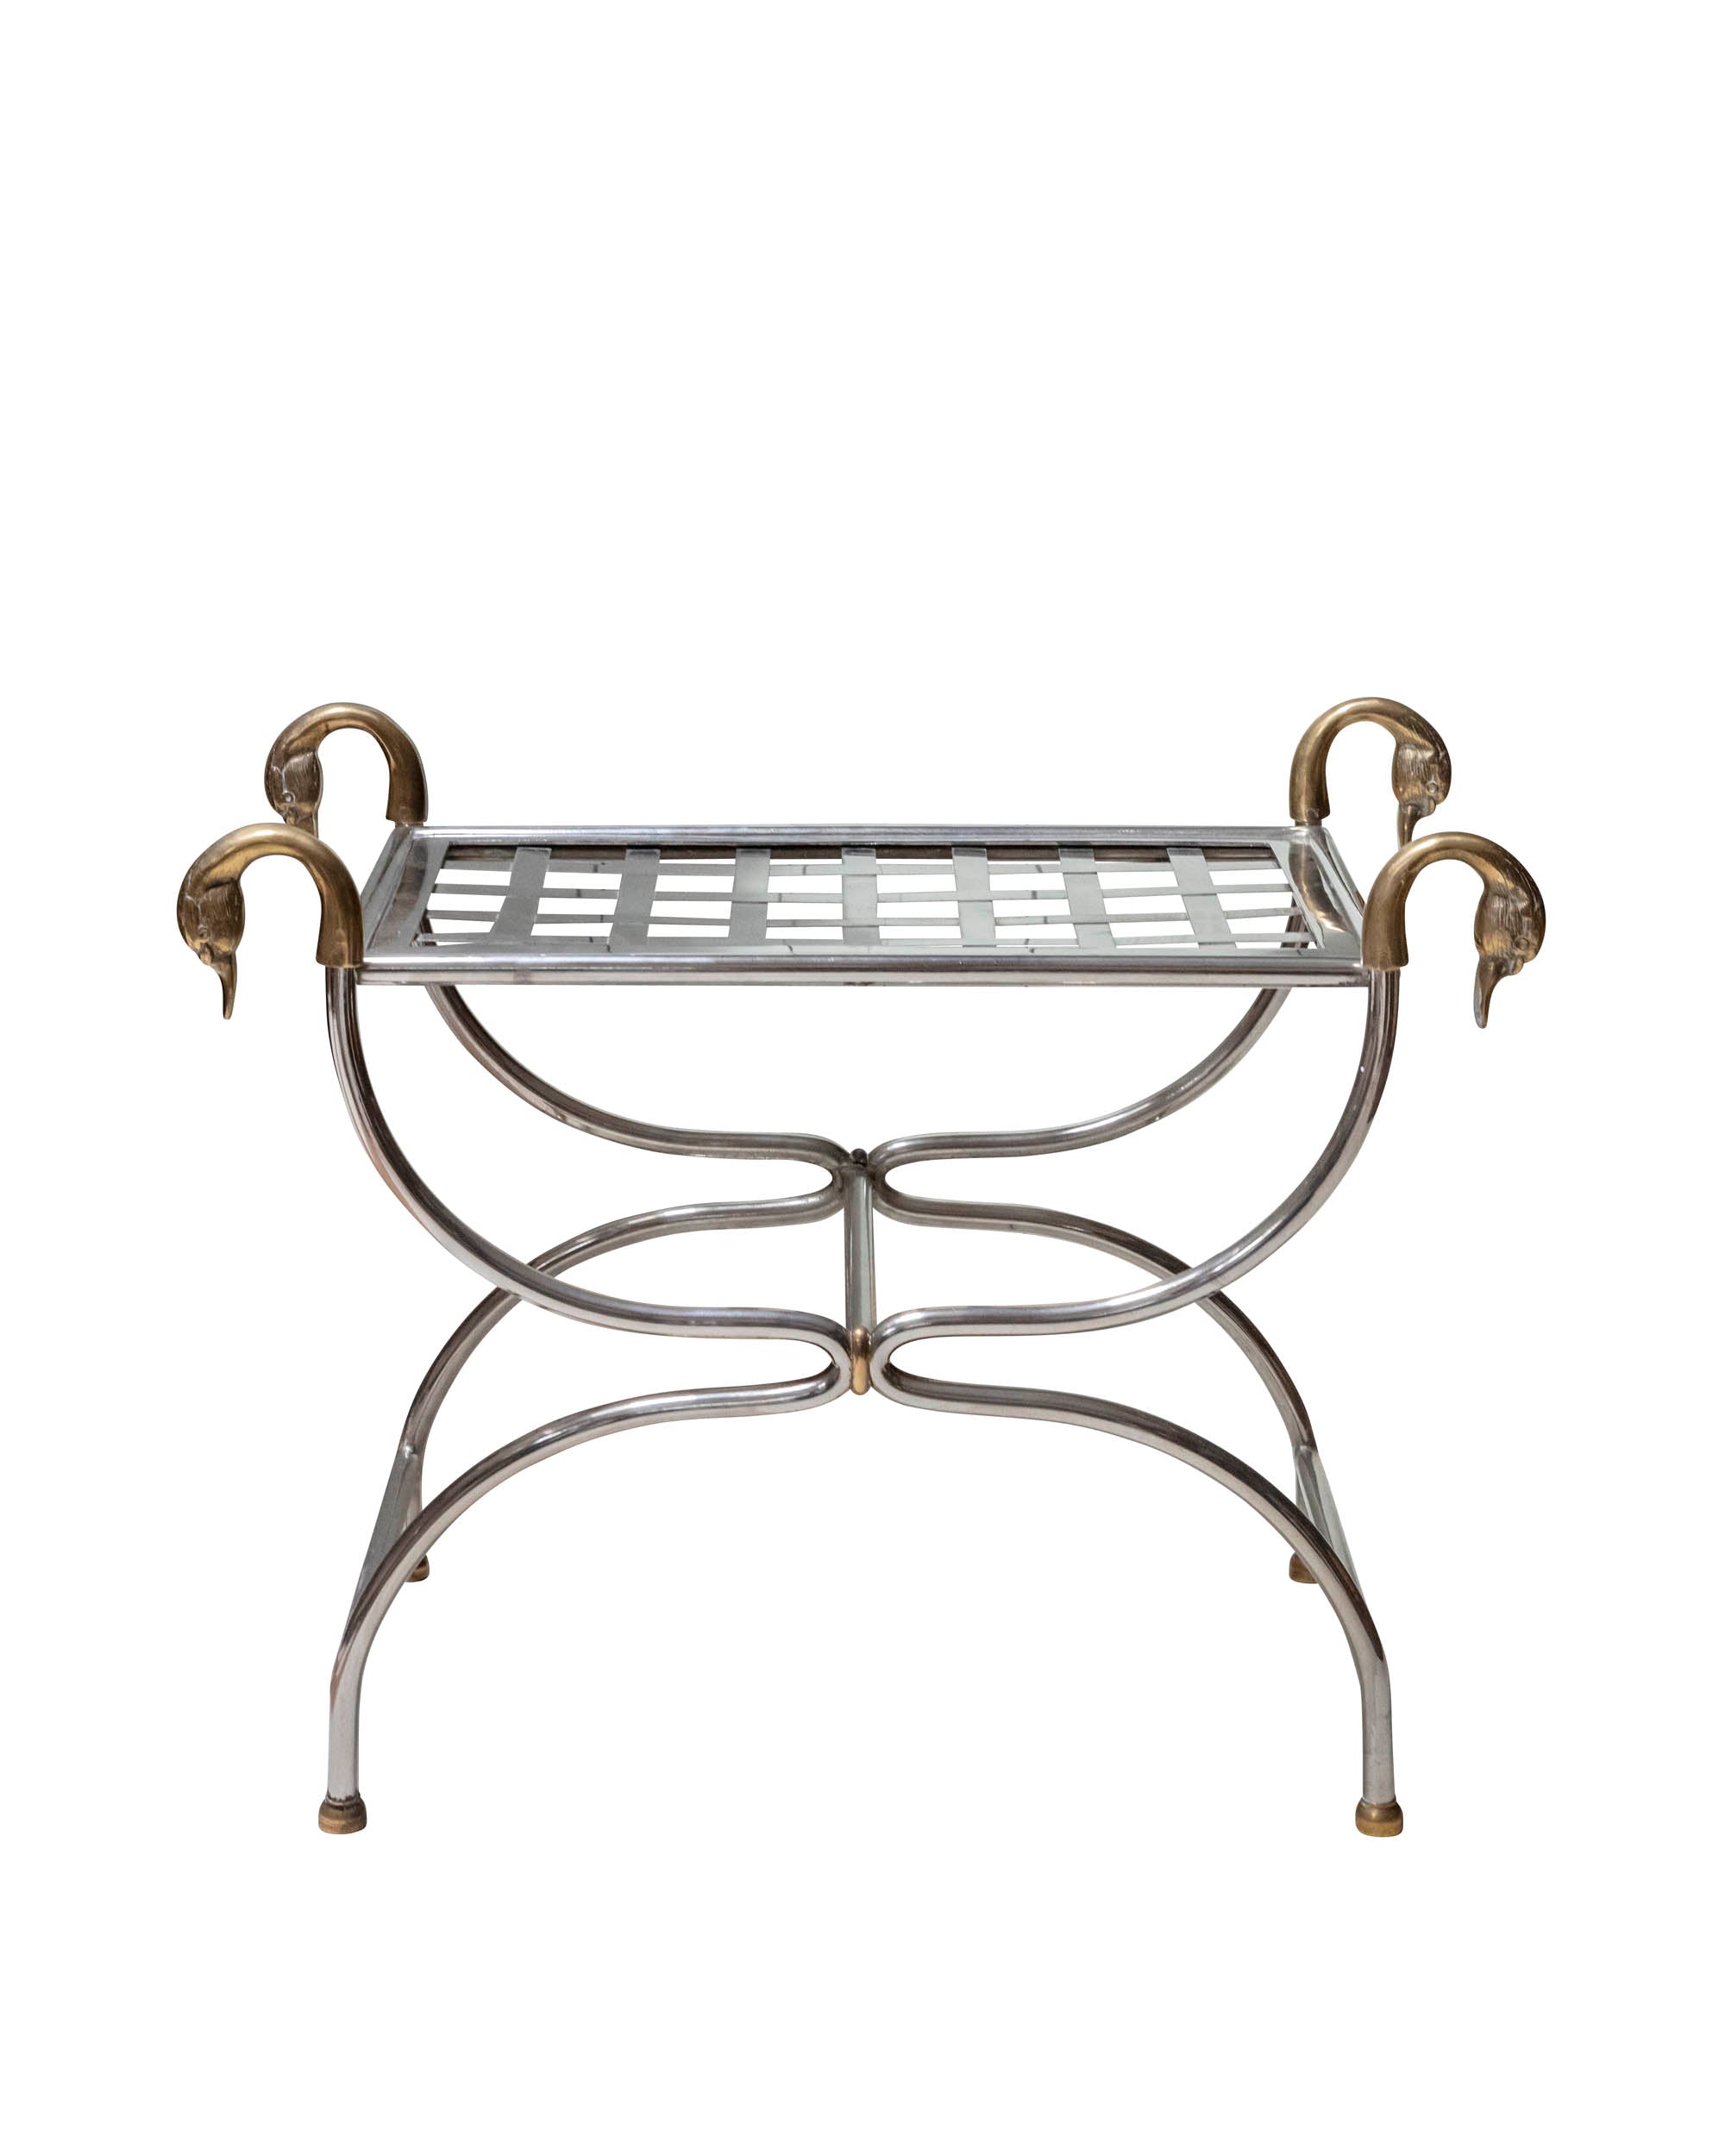 Table d'appoint "Lygne" avec structure en fer, cygnes sculptés en bronze et plateau en métal tressé